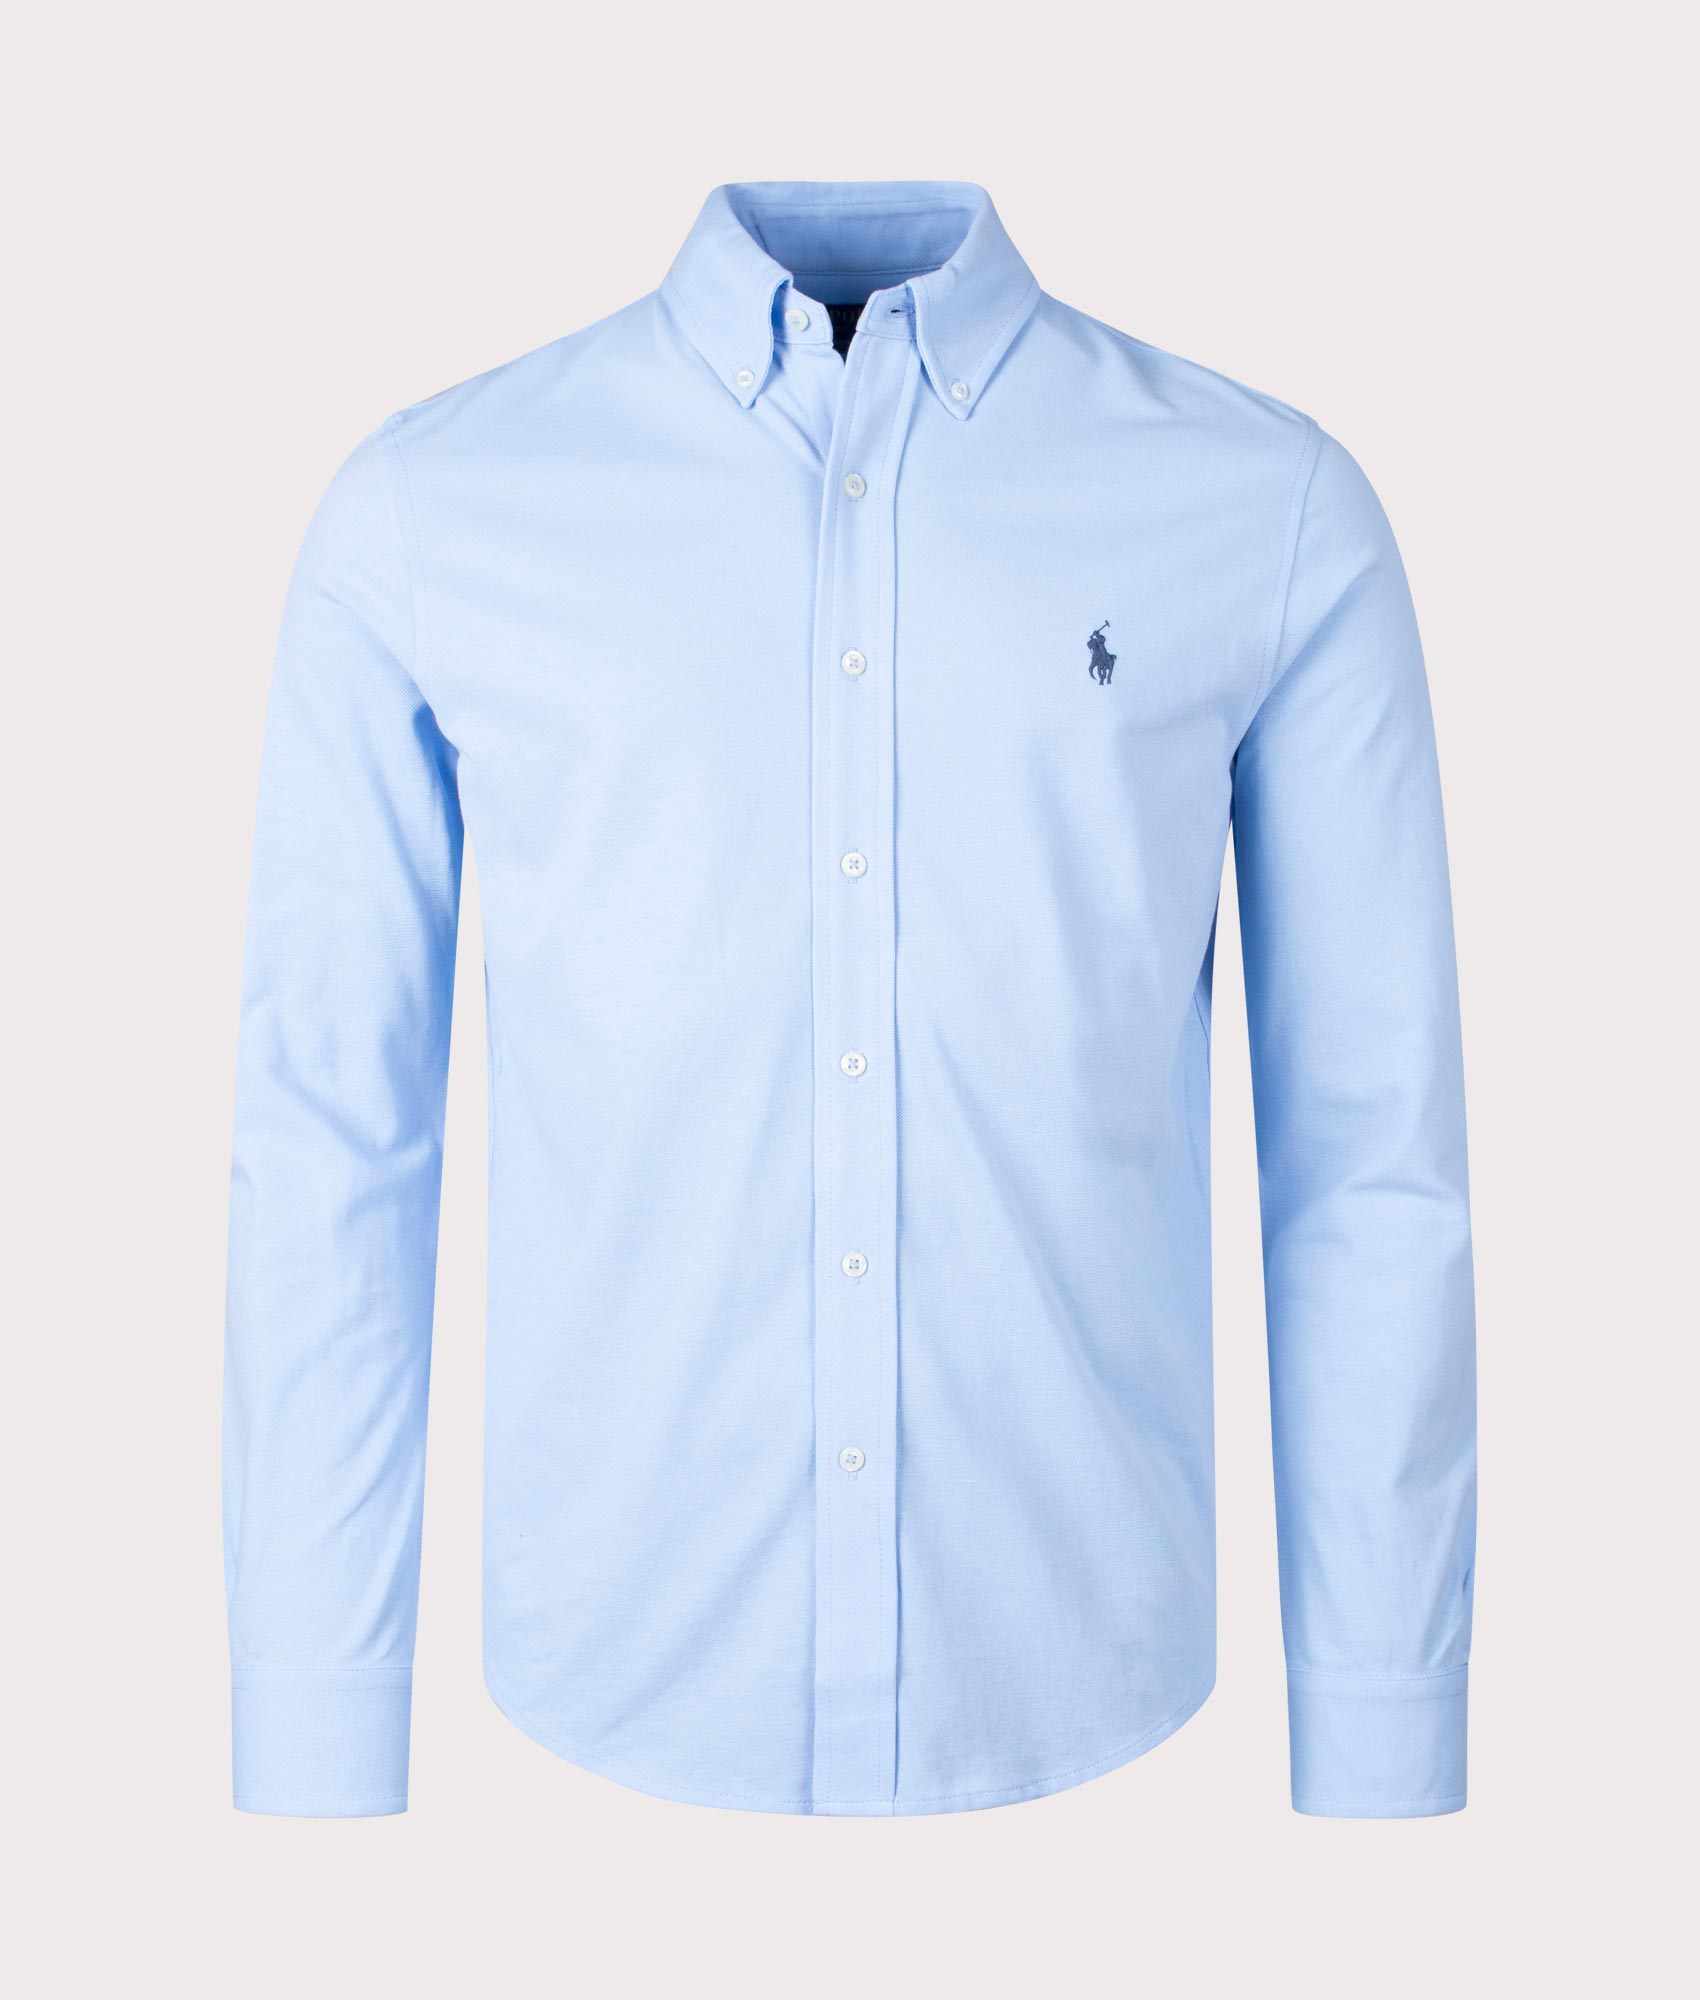 Polo Ralph Lauren Mens Featherweight Mesh Shirt - Colour: 117 Bluebell - Size: XL